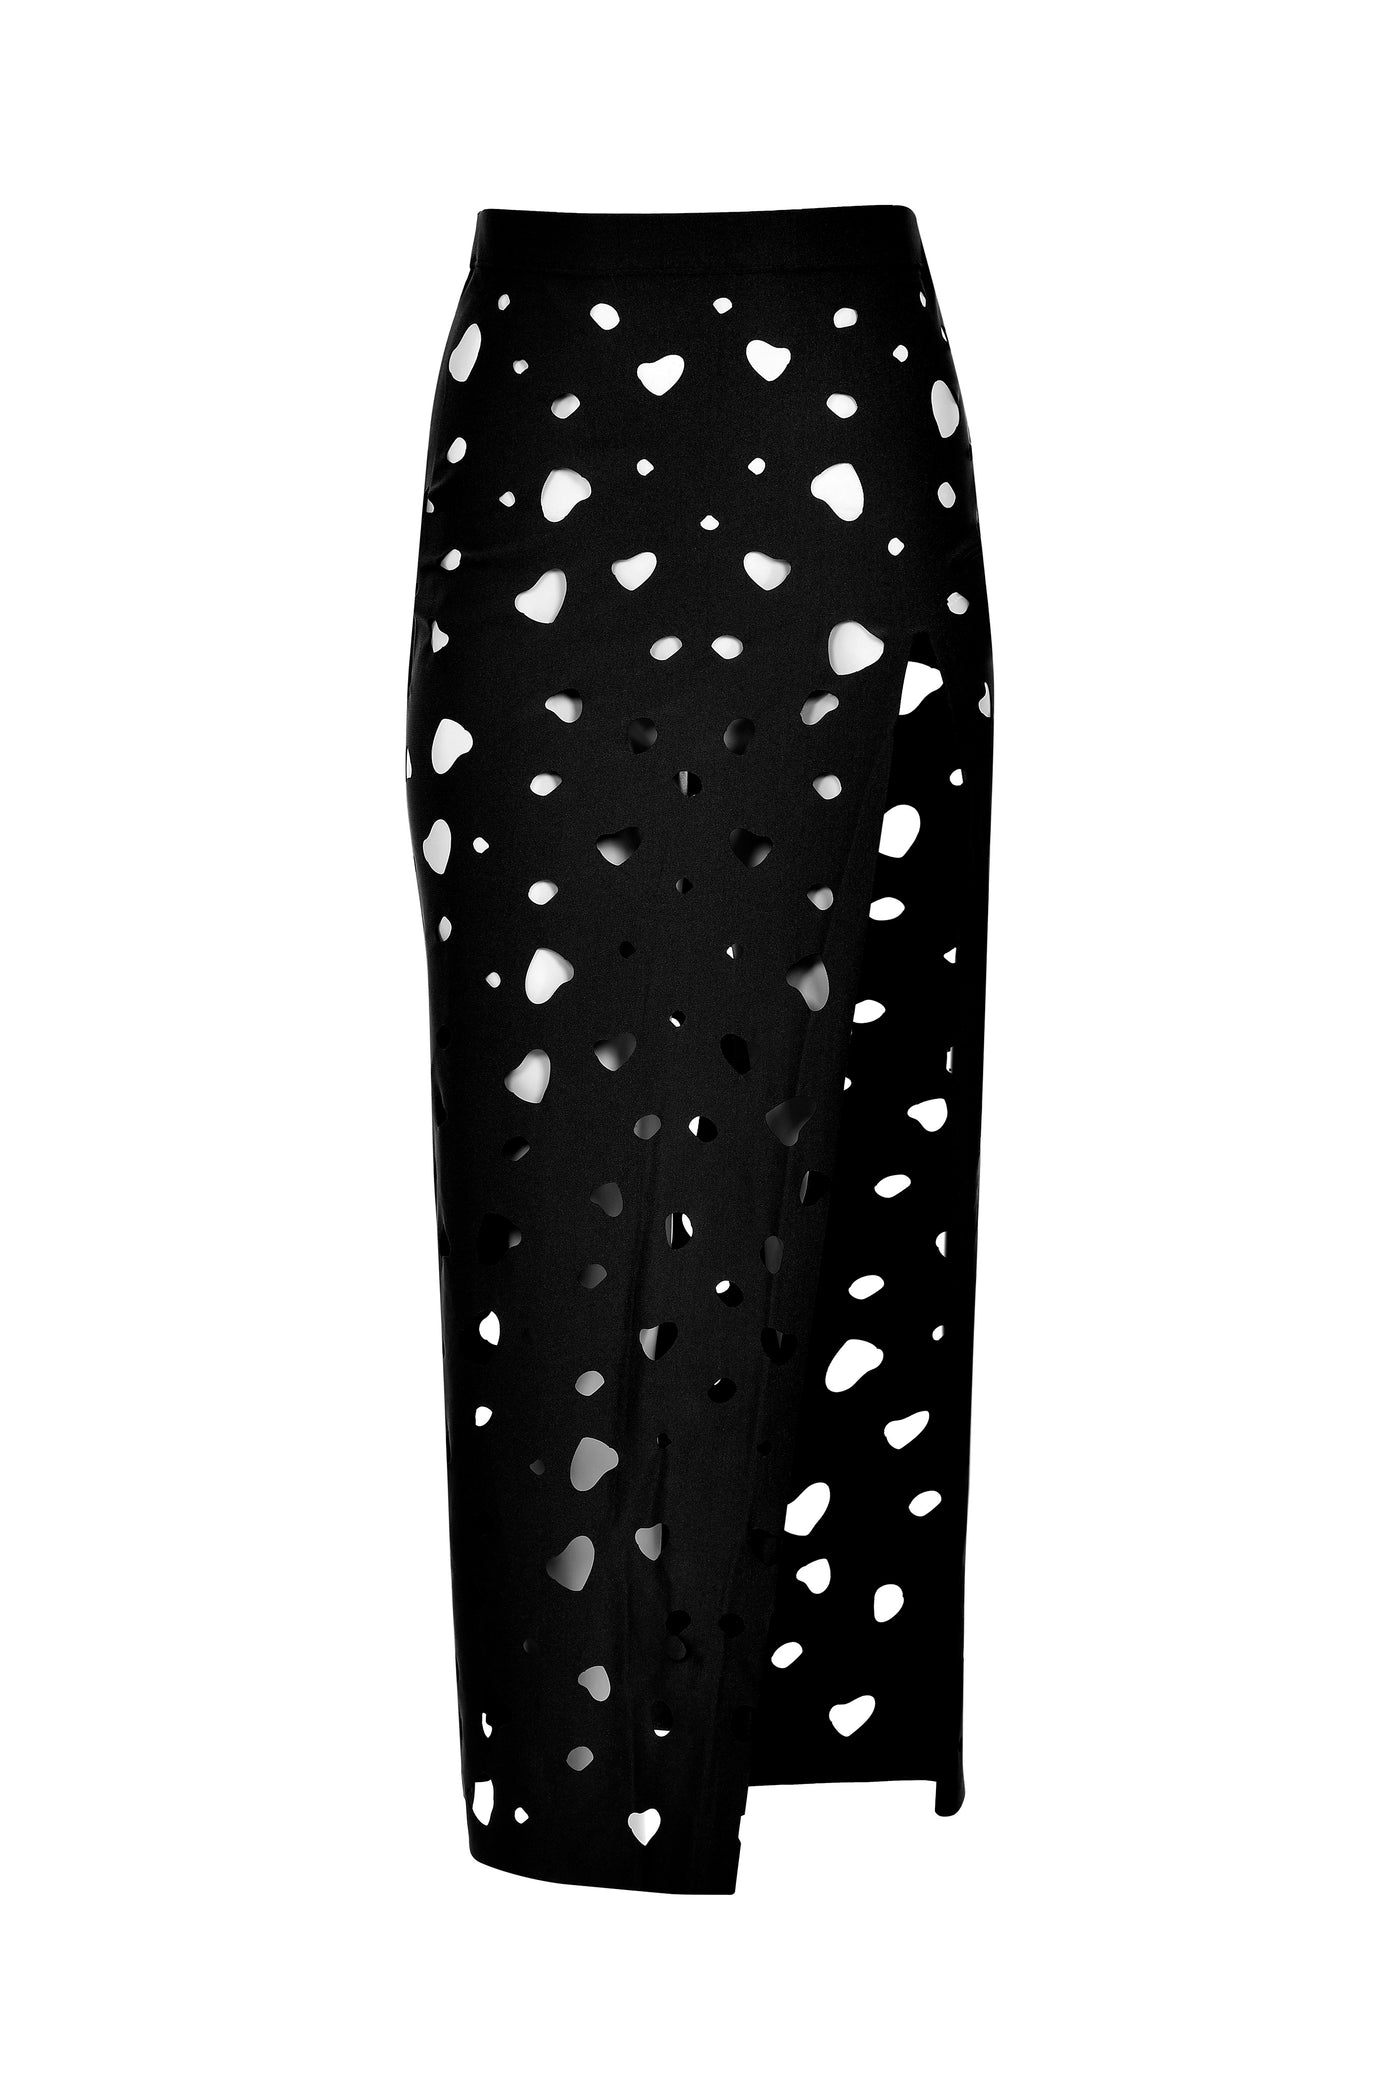 The Glittering Dots Skirt Black